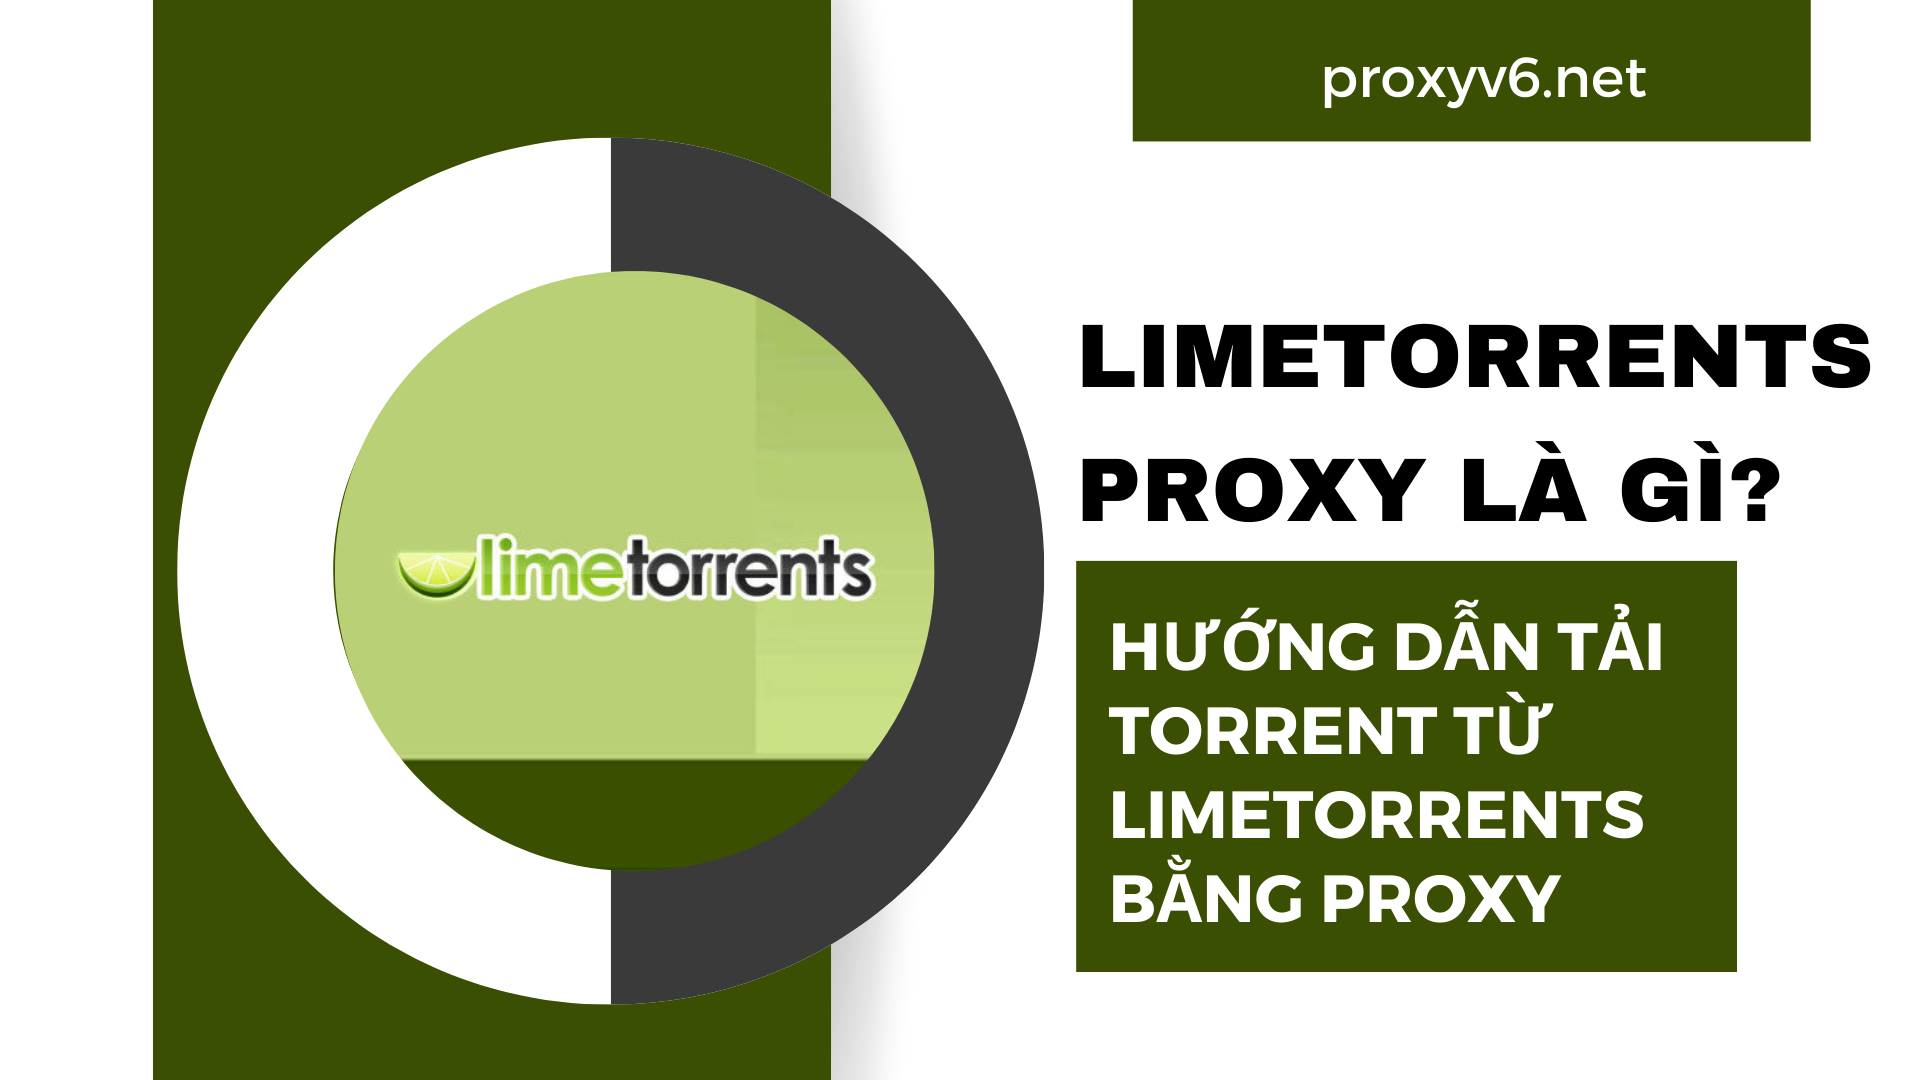 Limetorrents Proxy là gì? Hướng dẫn tải Torrent từ Limetorrents bằng Proxy